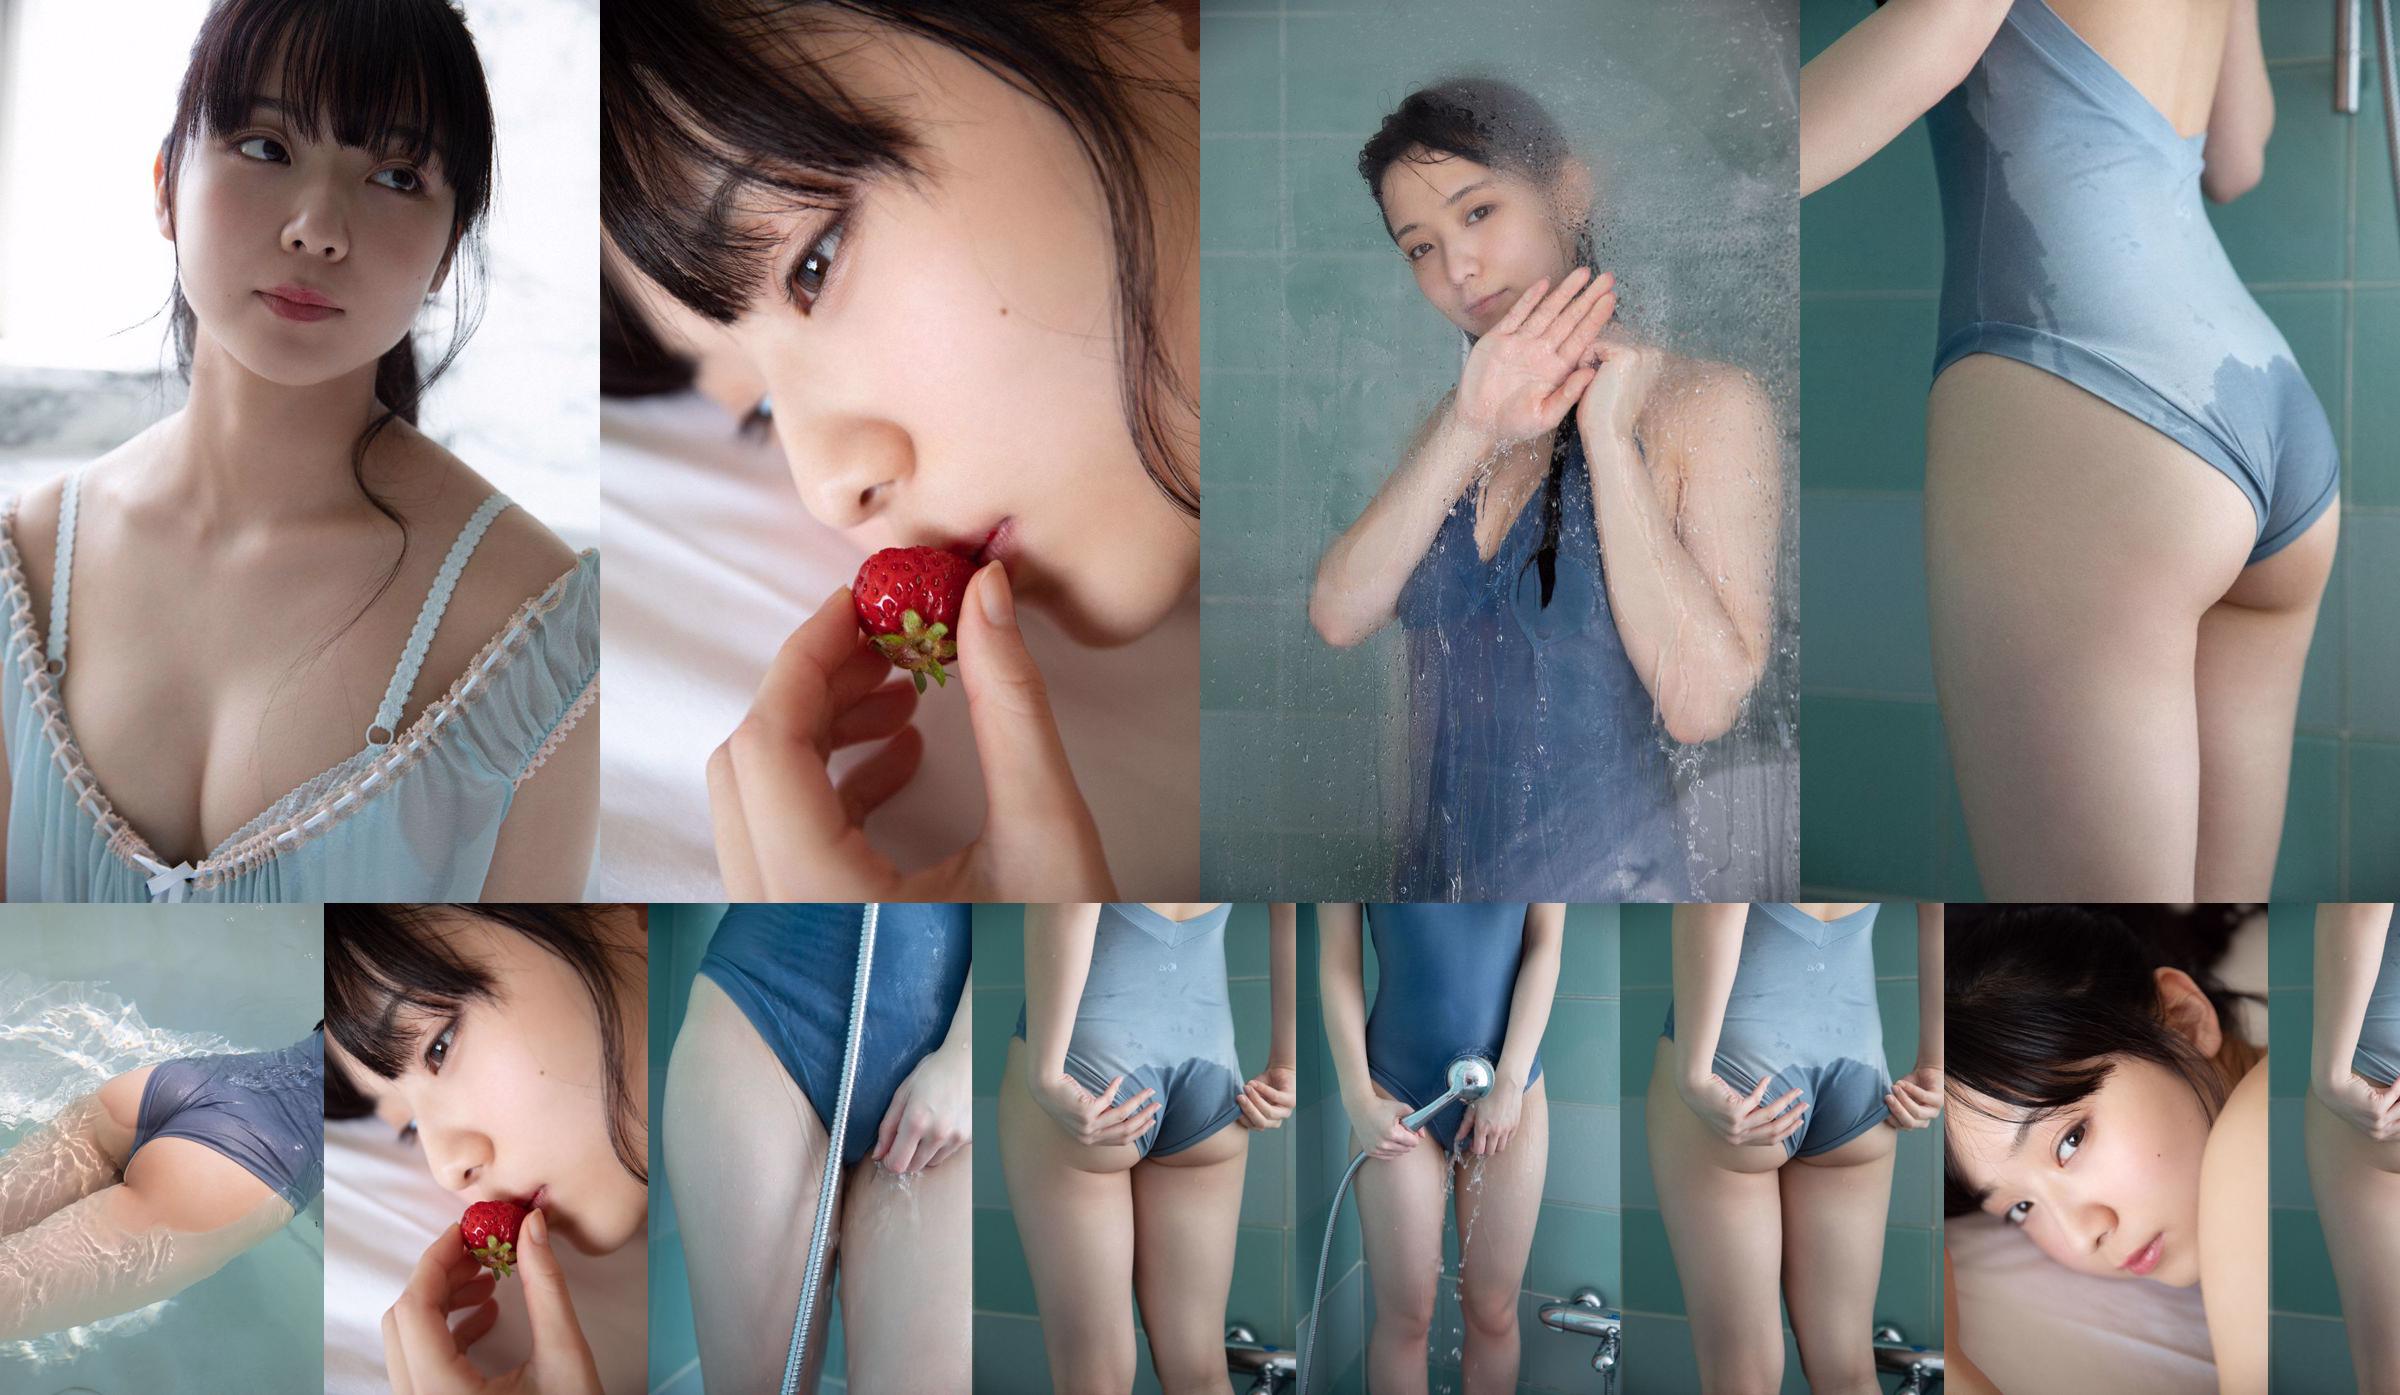 [THỨ SÁU] Mio Imada "Phép màu của nữ diễn viên + bikini trong phim truyền hình" Hana nochi Hare "" Ảnh No.140e59 Trang 2